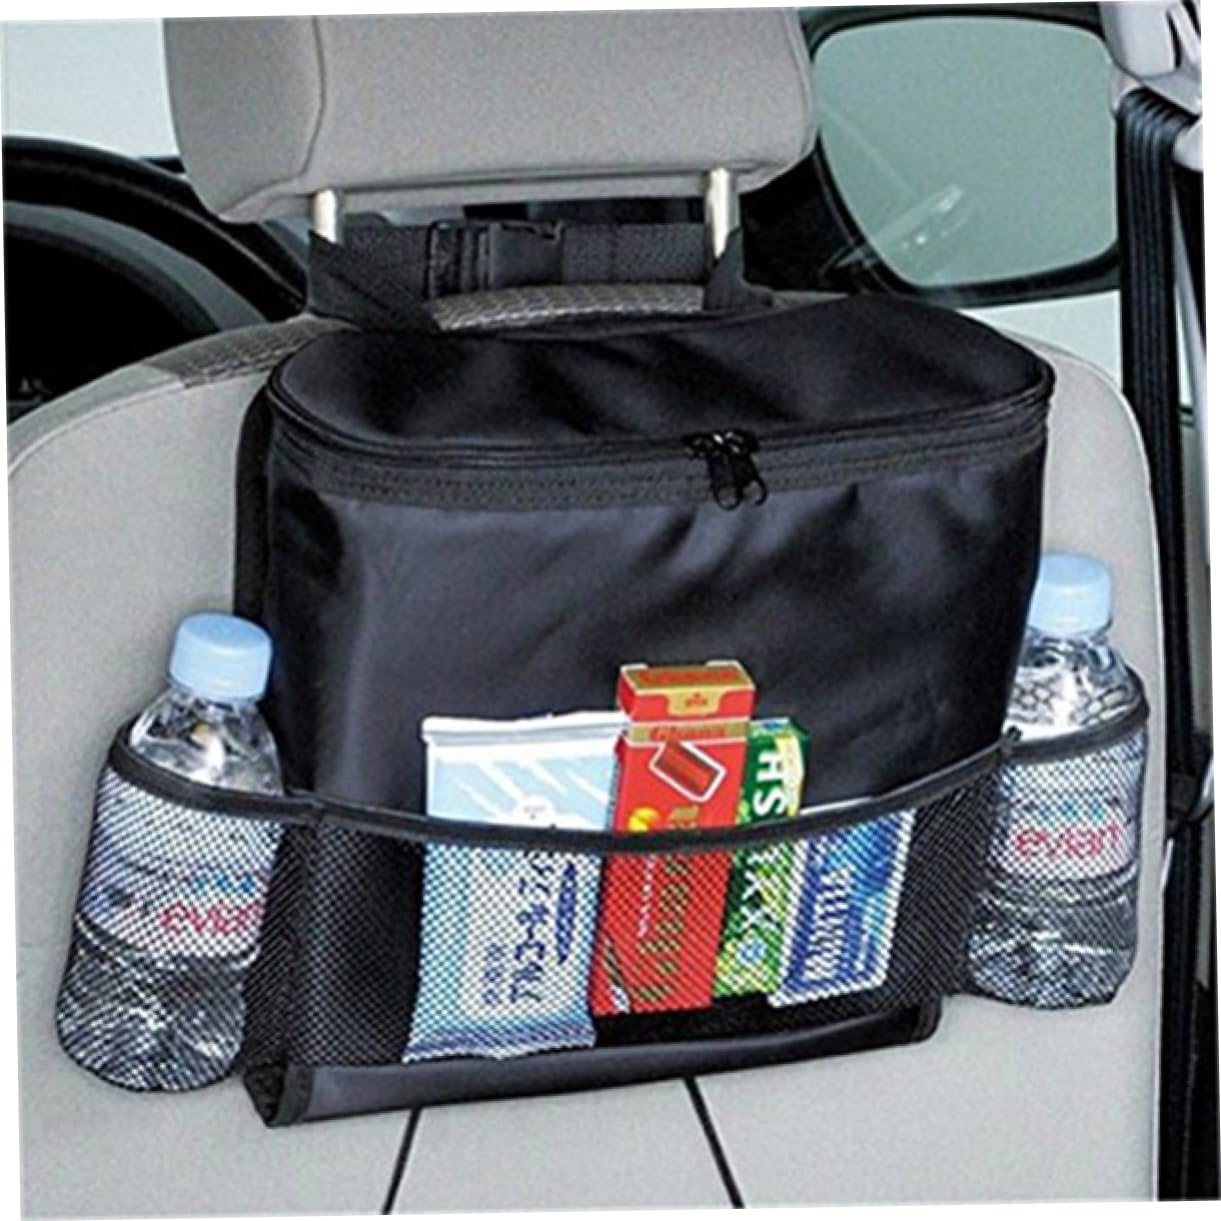 Insulated Holder Backseat Car Cooler Bag Product Details